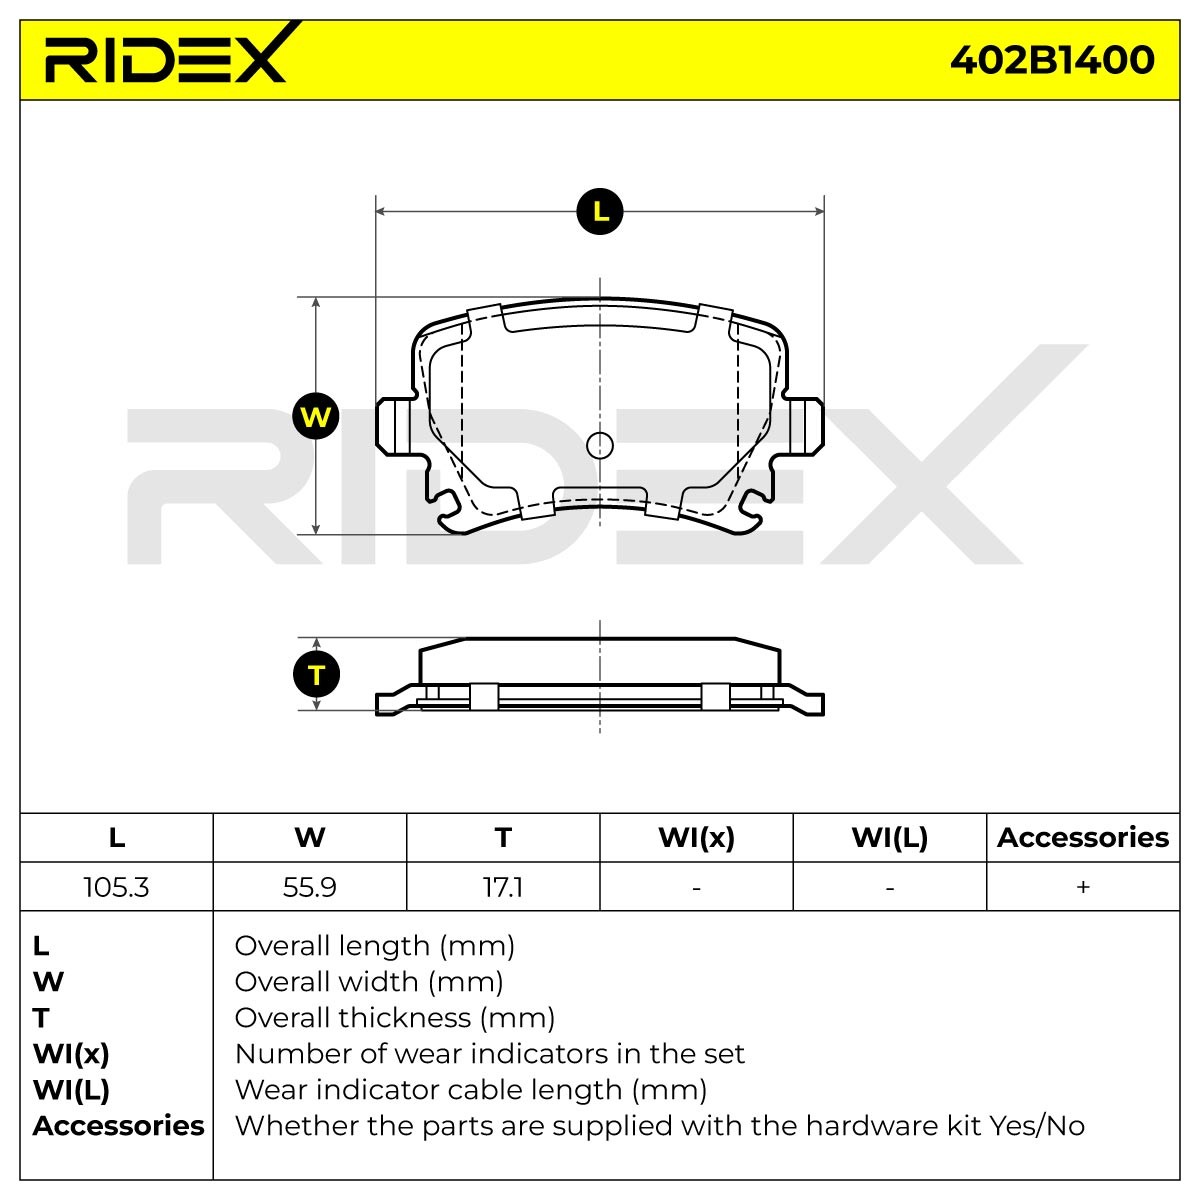 Brake pad set 402B1400 from RIDEX